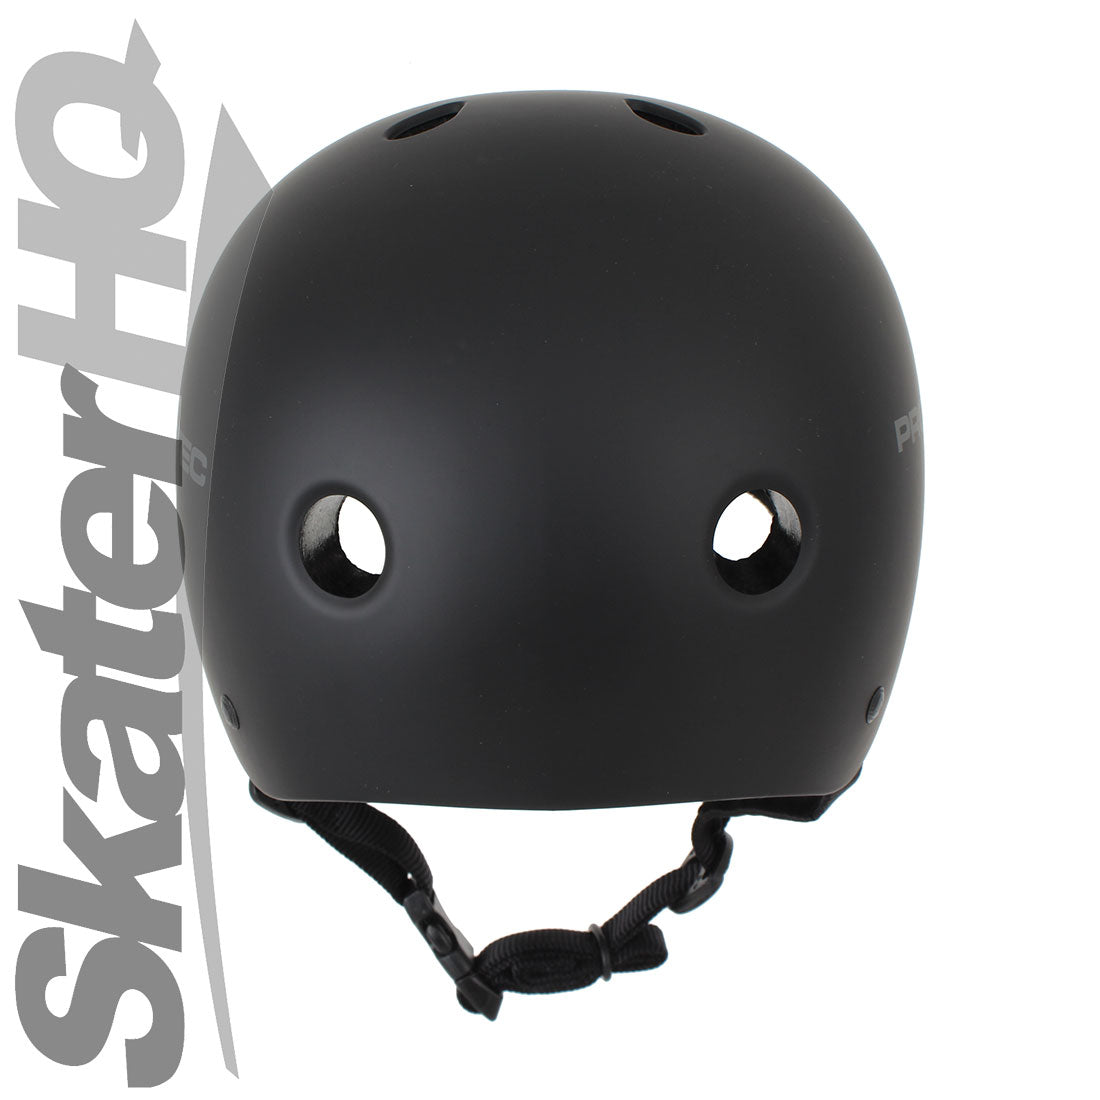 Pro-Tec Classic Cert Matte Black - XSmall Helmets